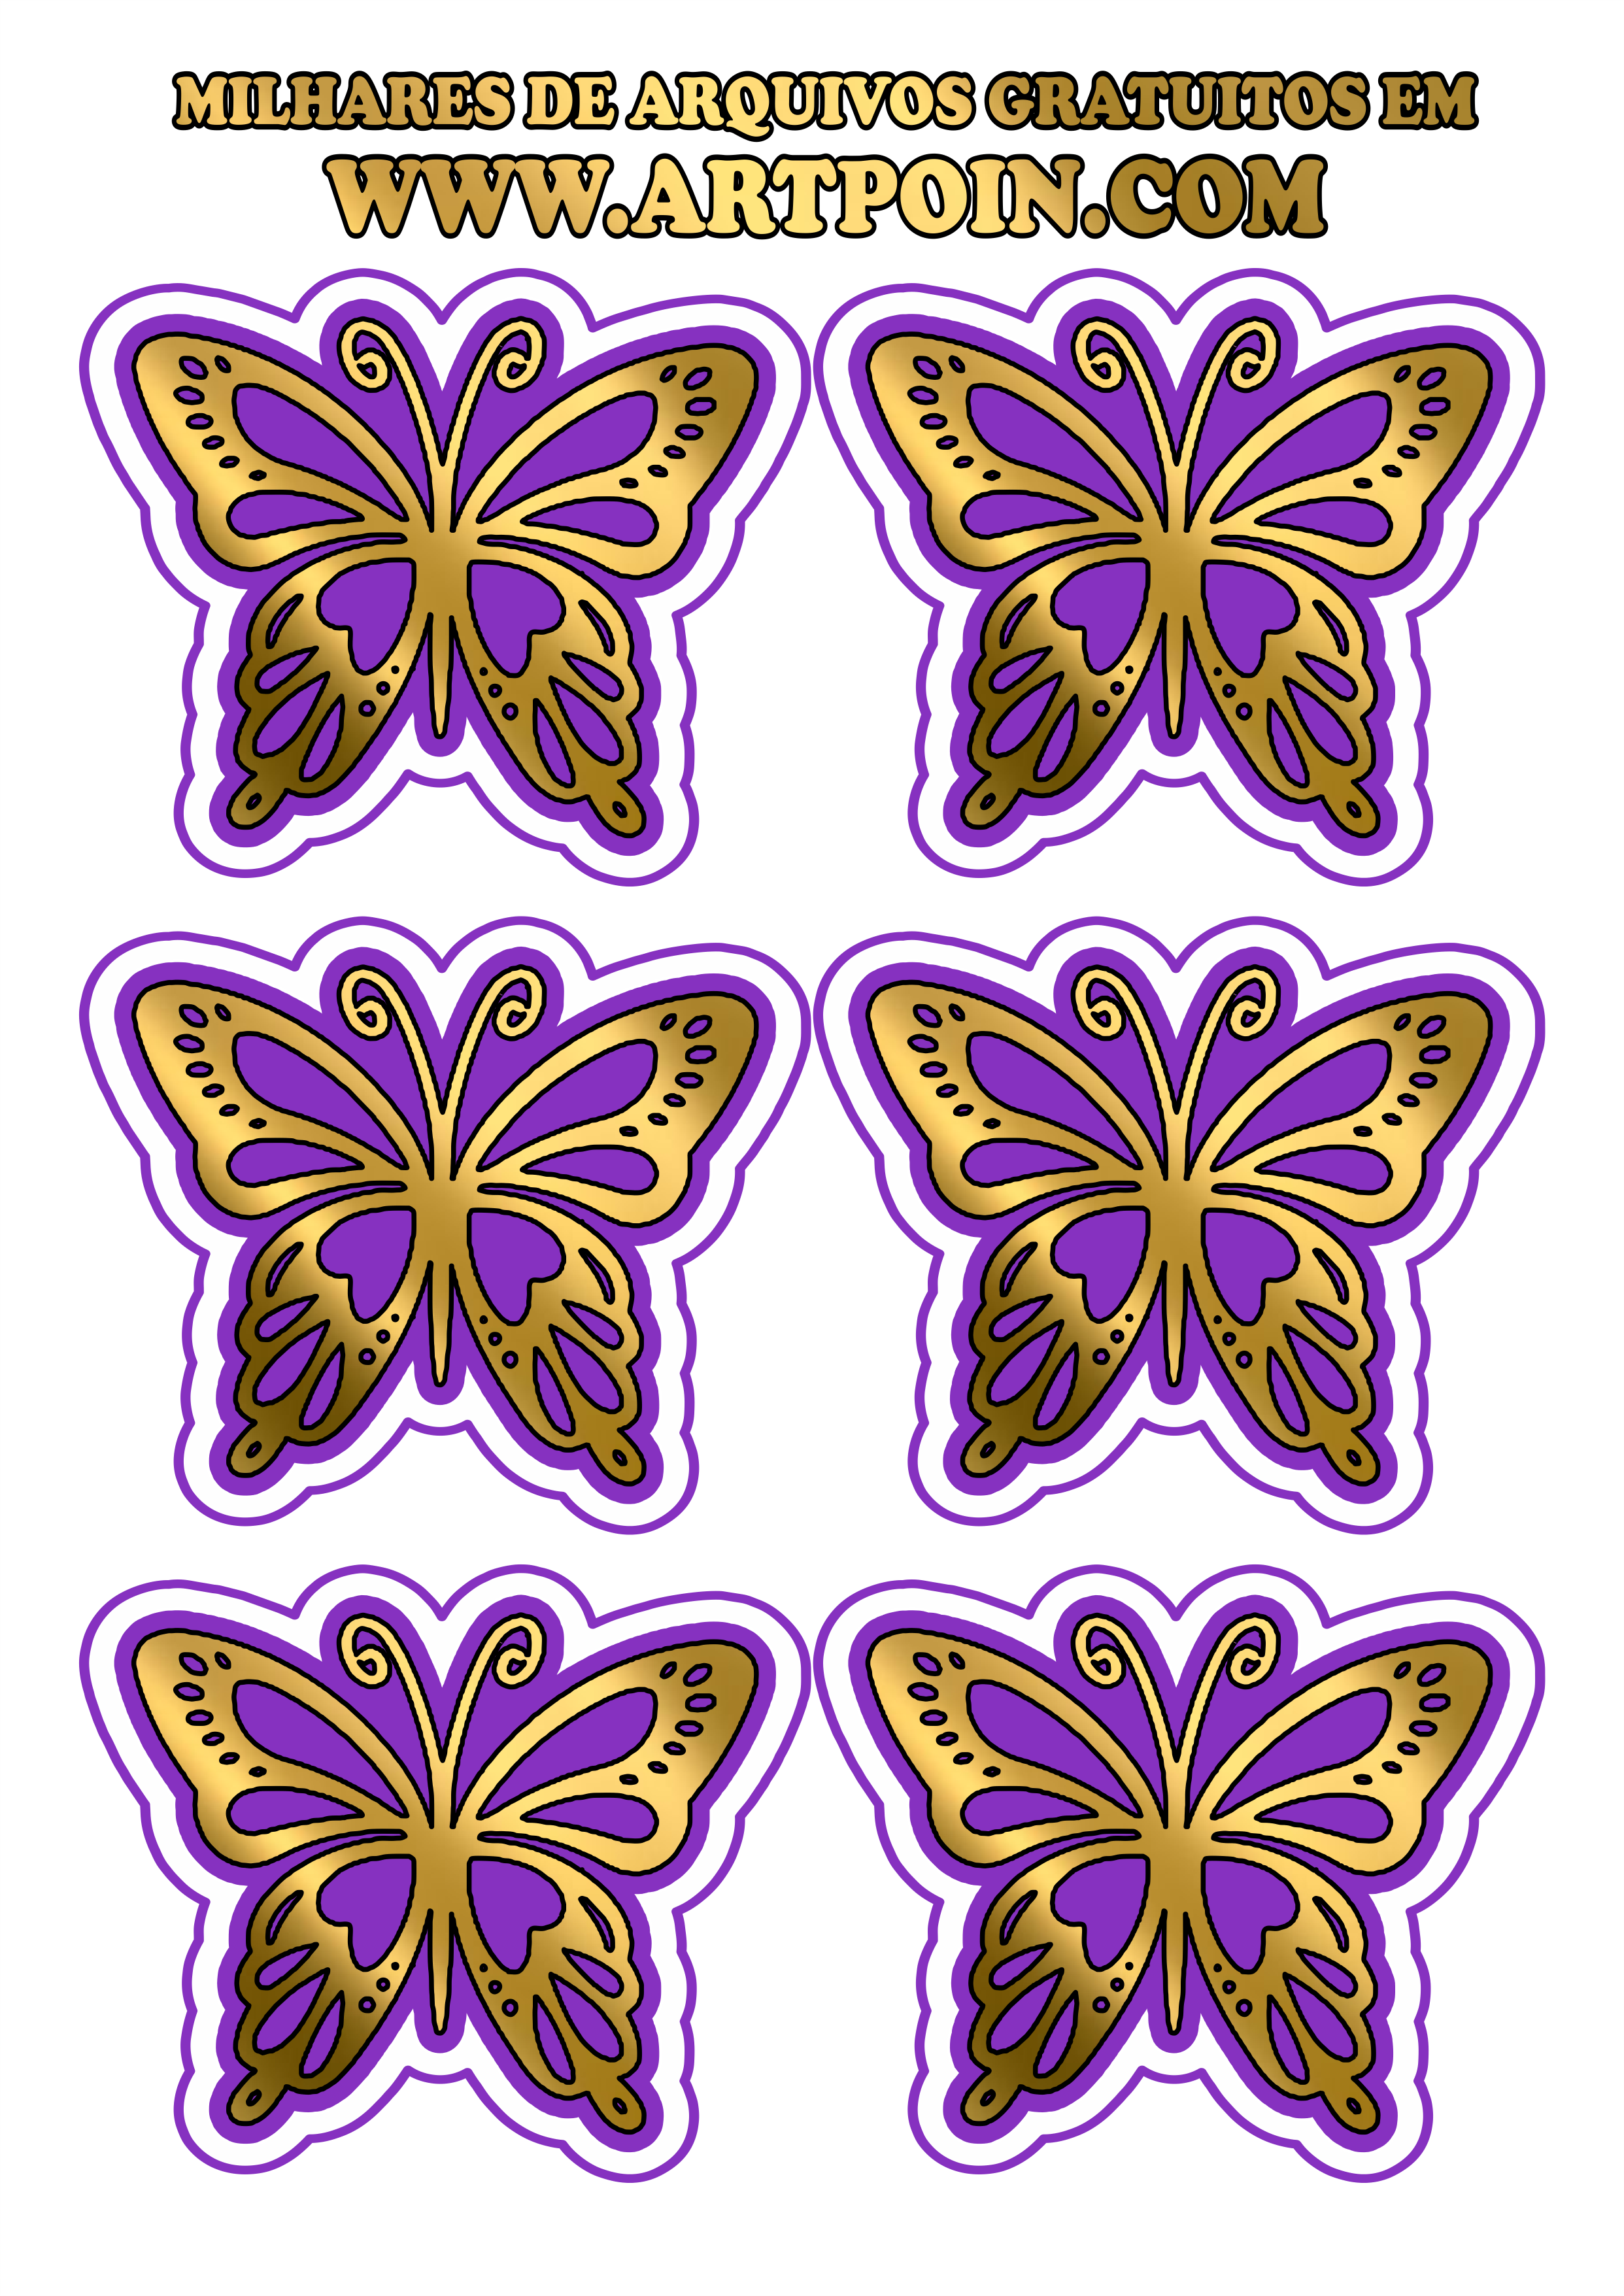 borboleta-dourada-com-lilas1